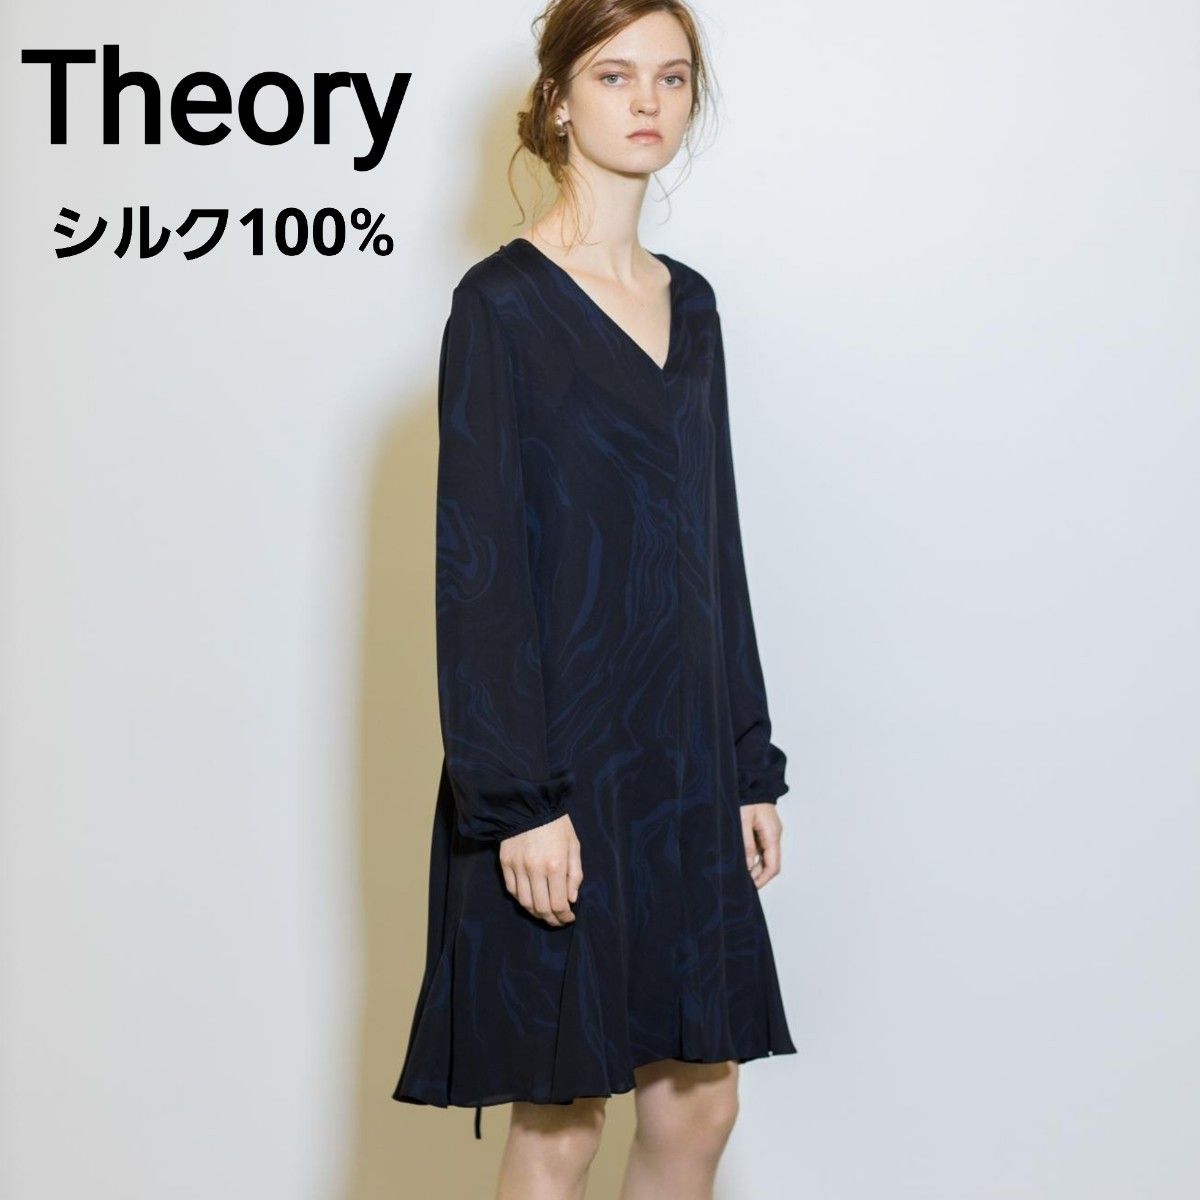 Theory セオリー シルク ドレス ワンピース オイル柄 黒 紺 Mサイズ相当 2020年 超人気 完売品 極美品